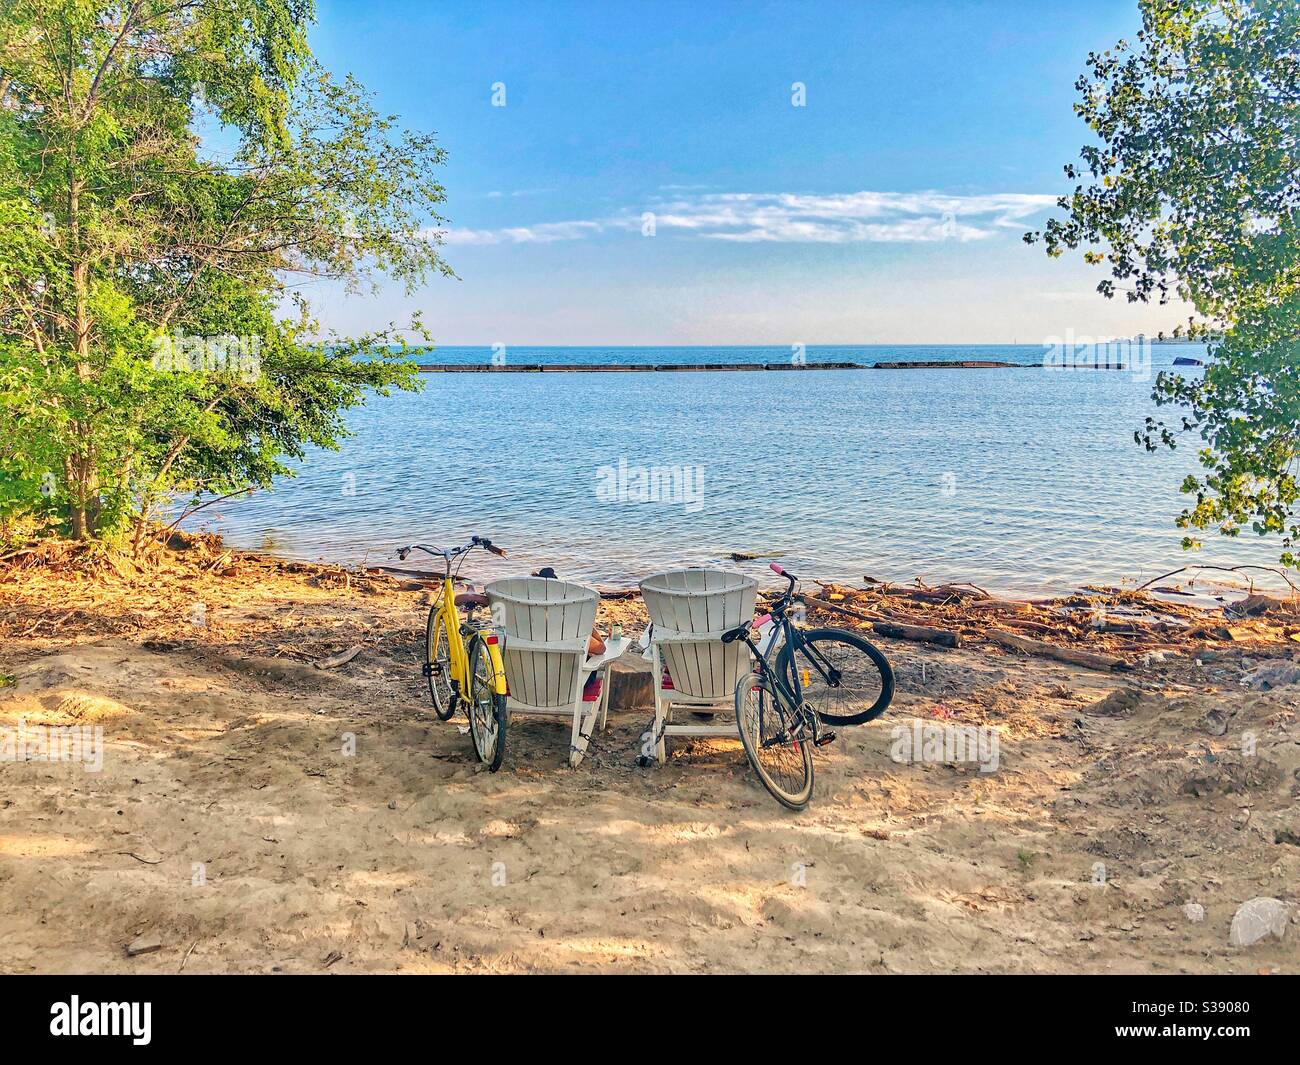 A couple relaxing on Sunnyside Beach in Toronto, Ontario, Canada. Stock Photo